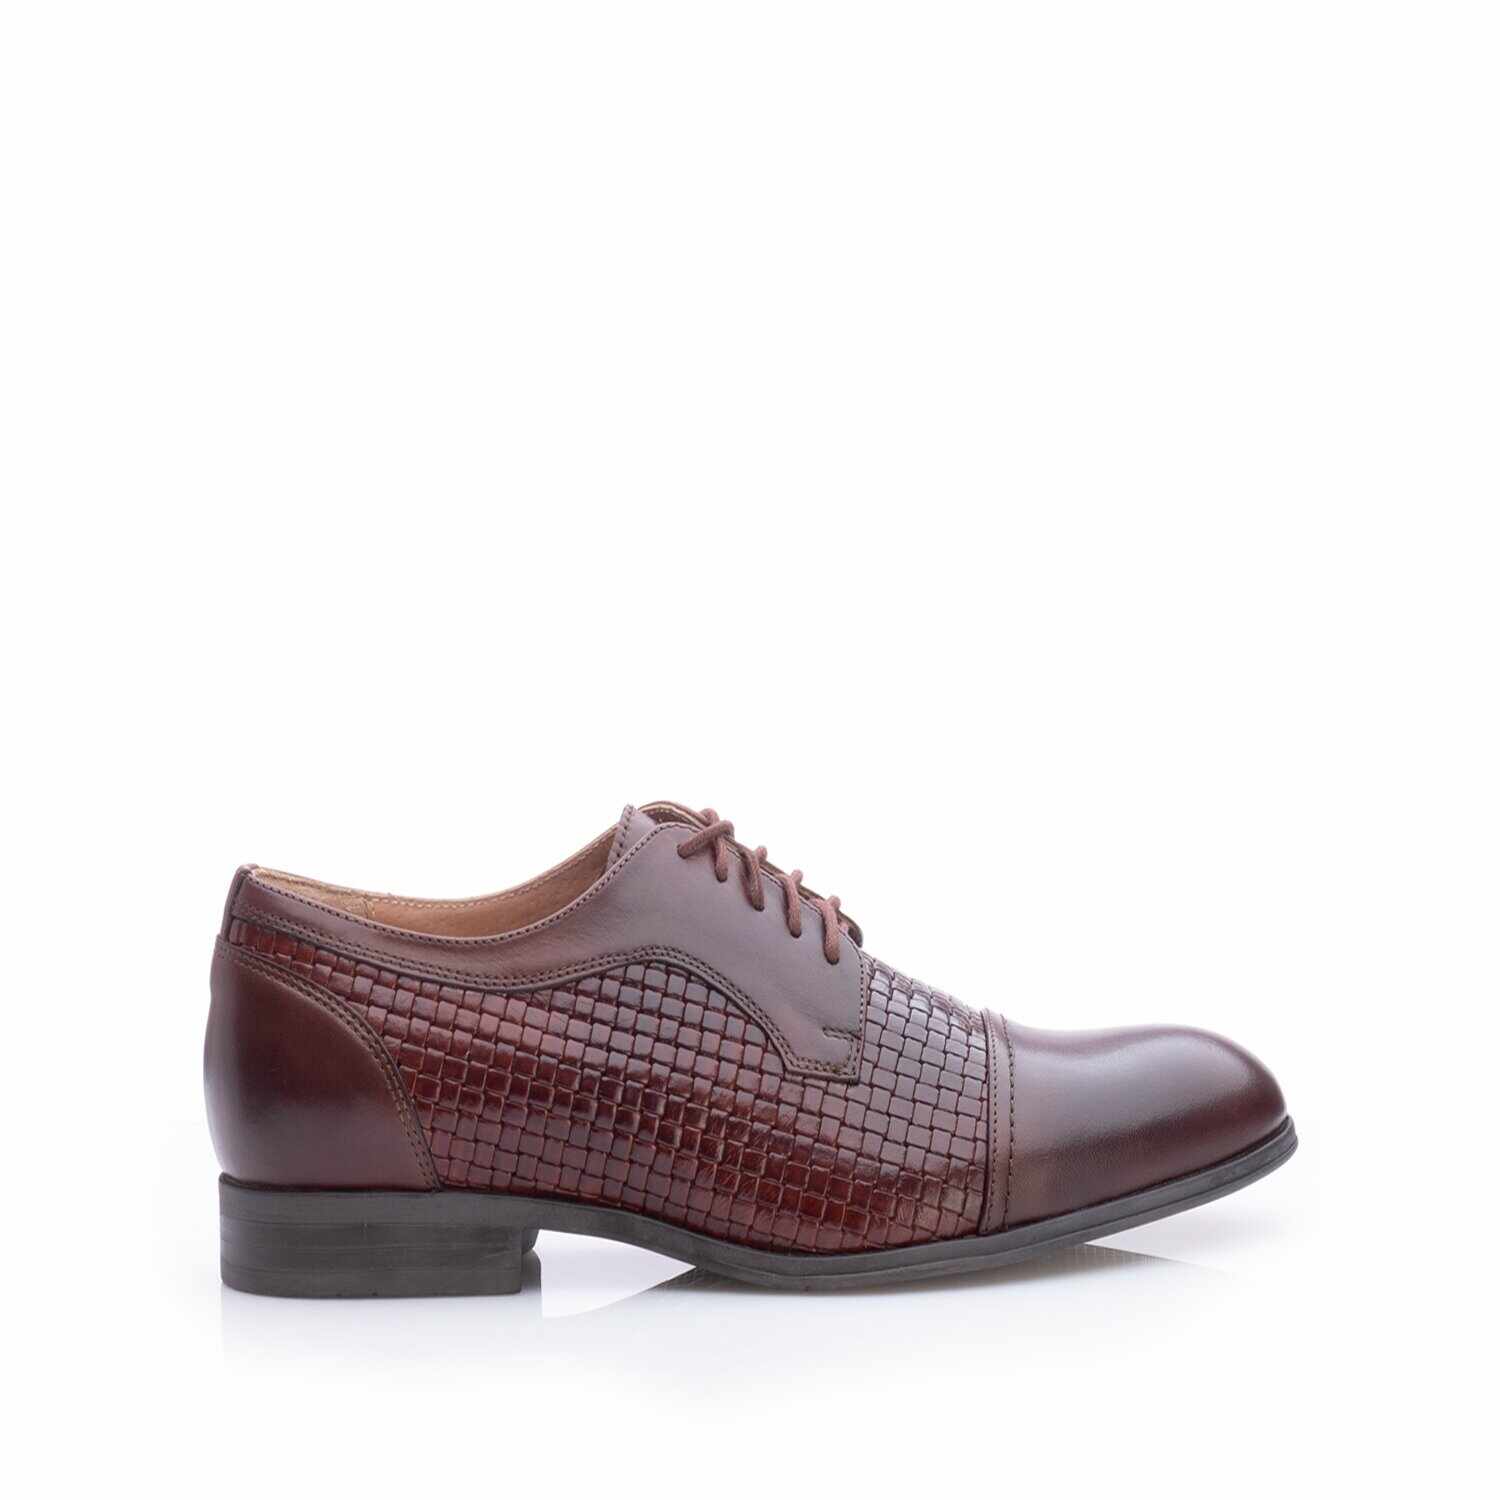 Pantofi eleganți bărbați din piele naturală, Leofex - 525 Mogano Box